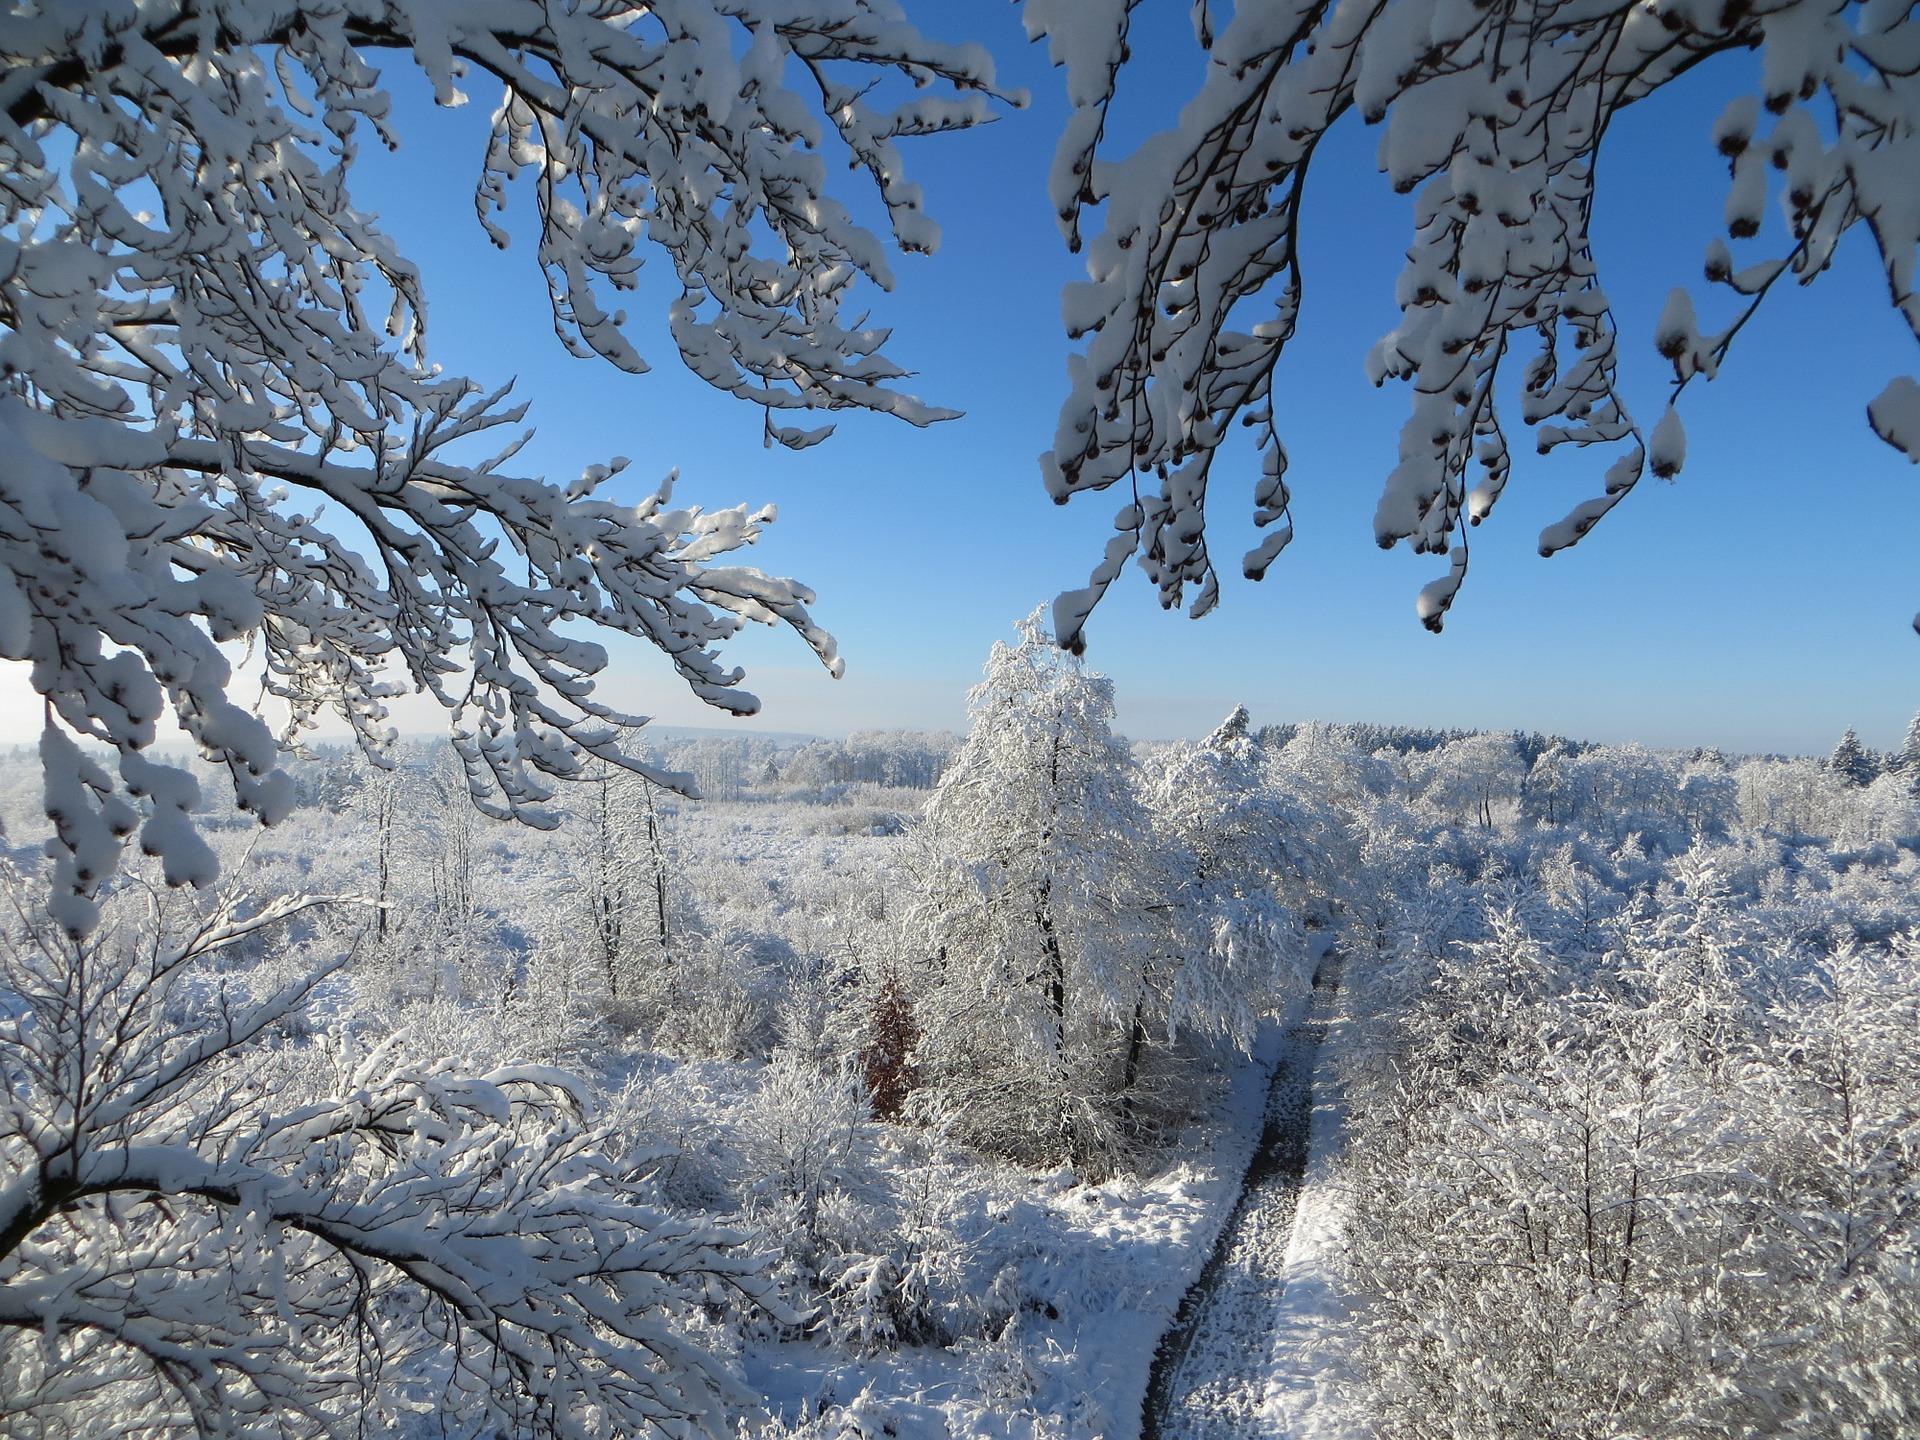 Aesthetic Snow Wallpapers - Top Những Hình Ảnh Đẹp